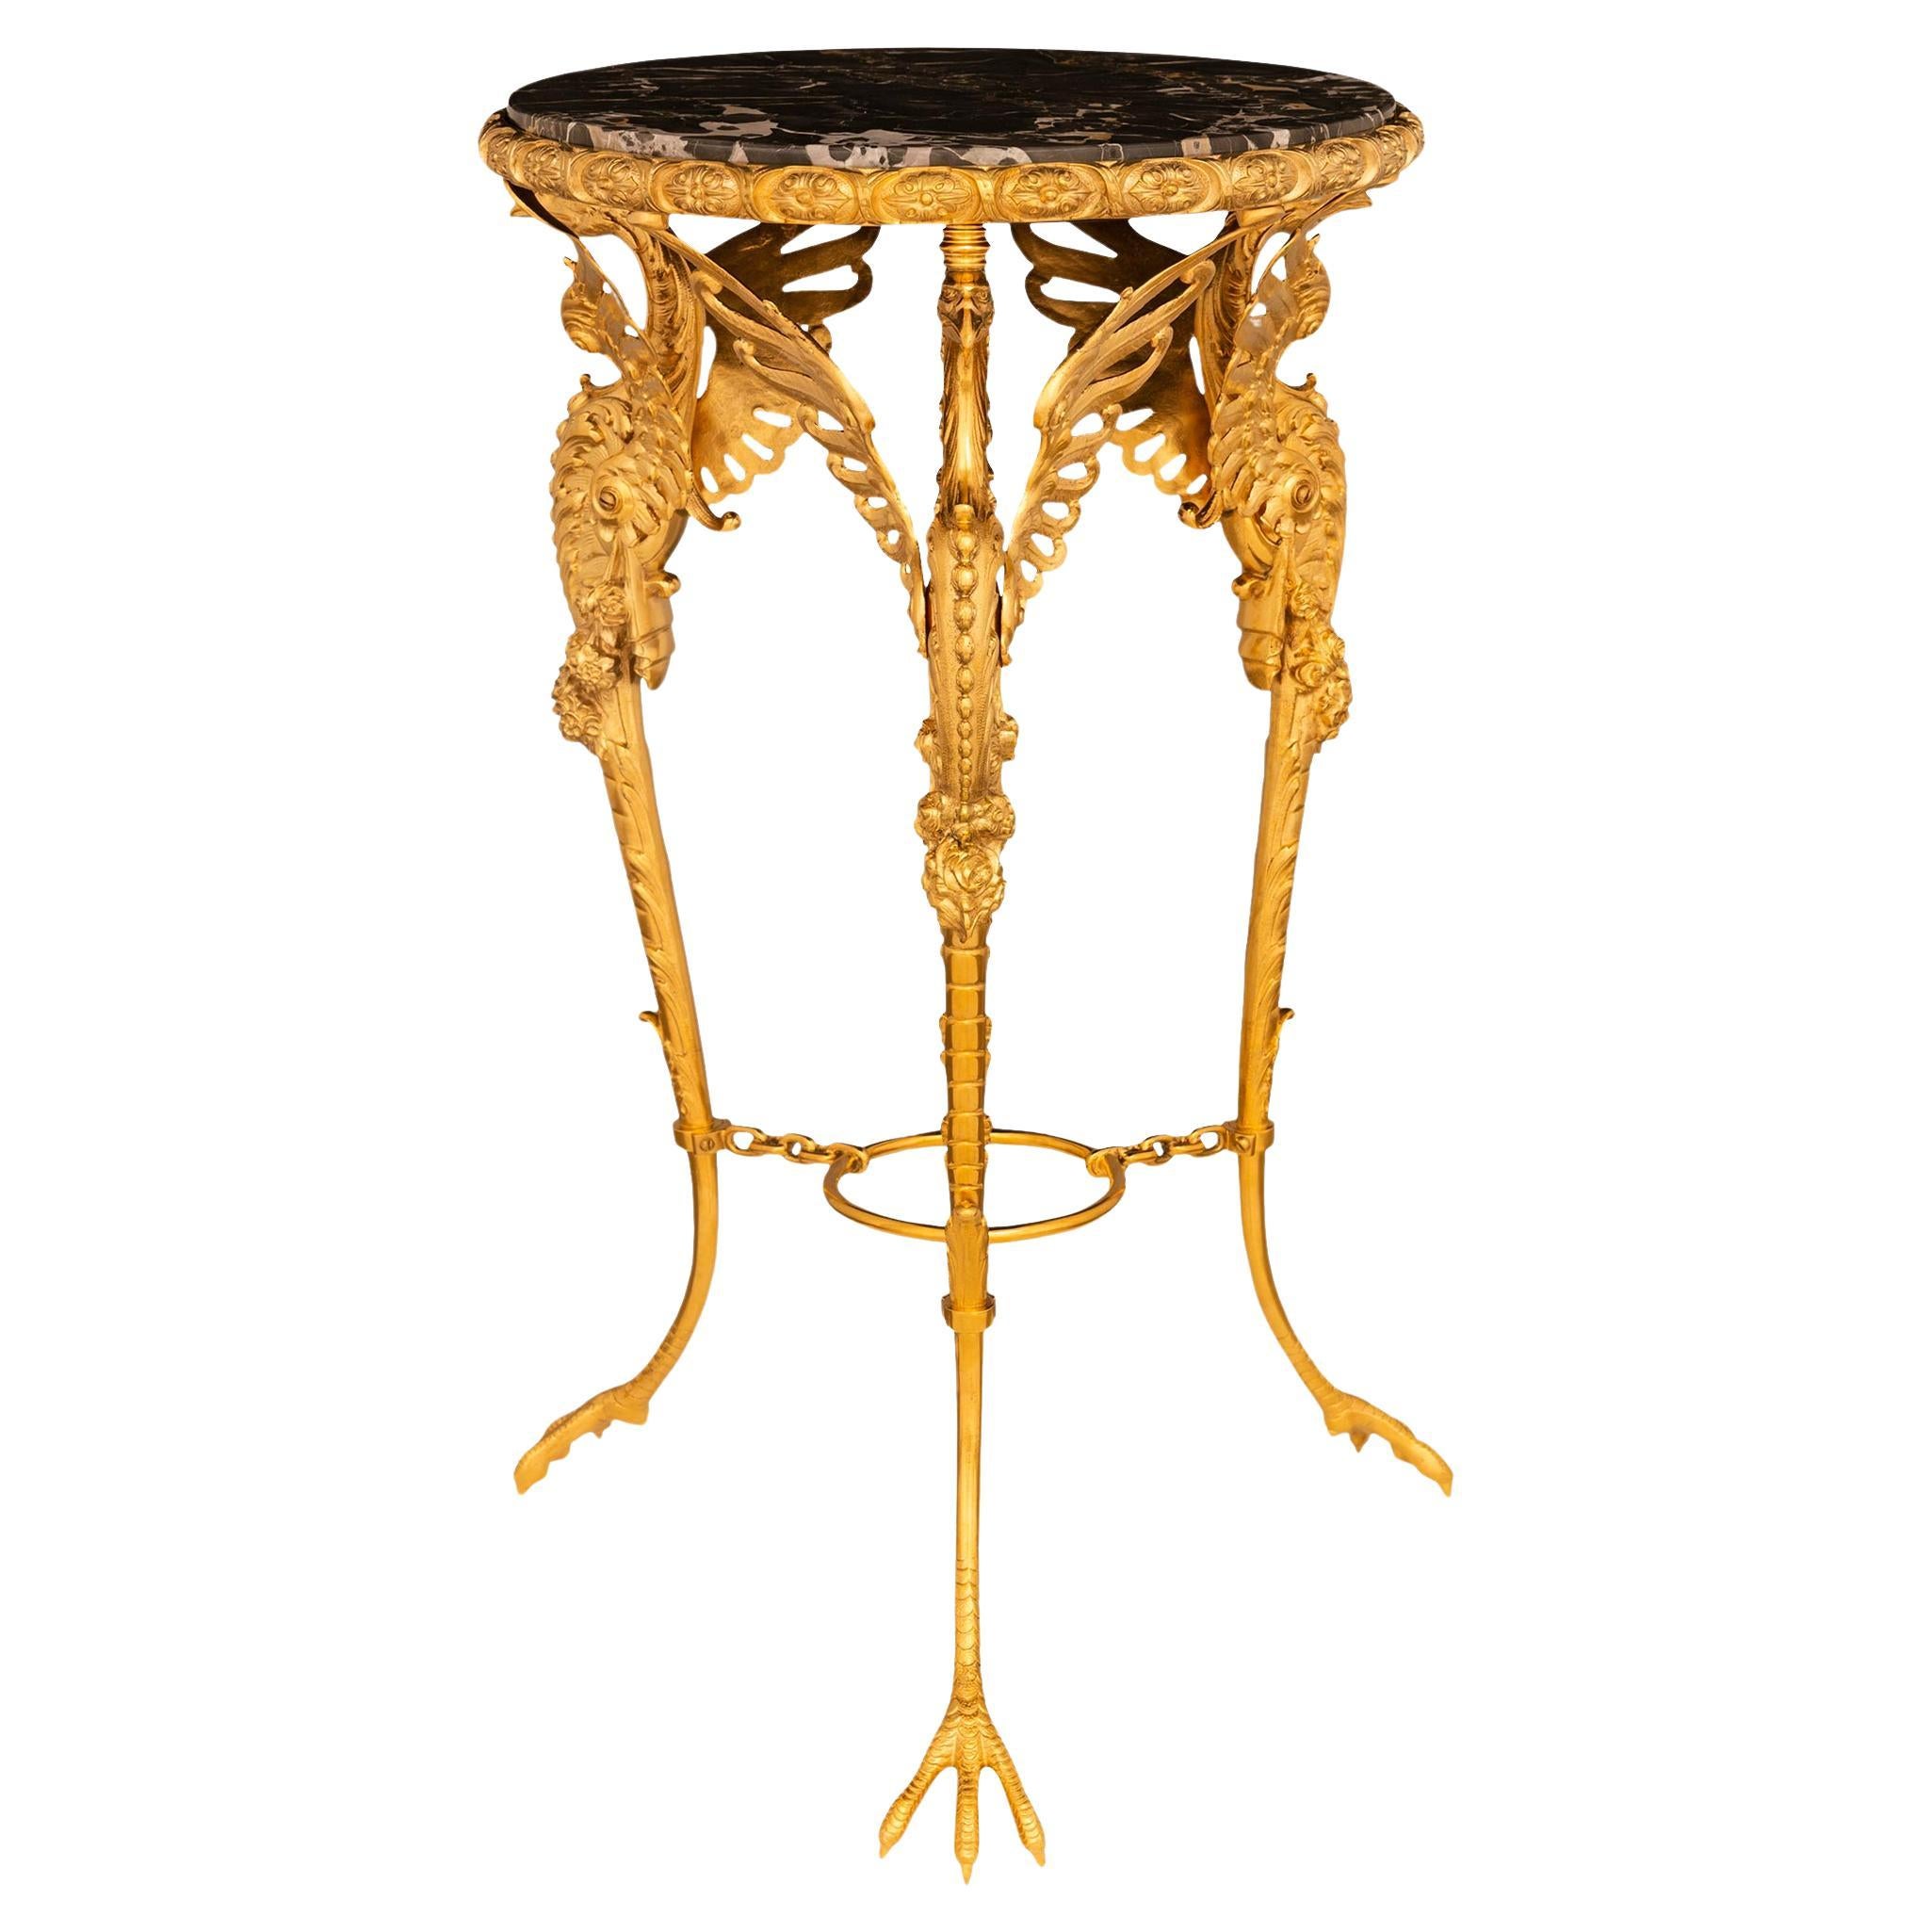 Table d'appoint néo-classique française du 19e siècle, en marbre et bronze doré. Table d'appoint en bronze doré et marbre, vers 1890